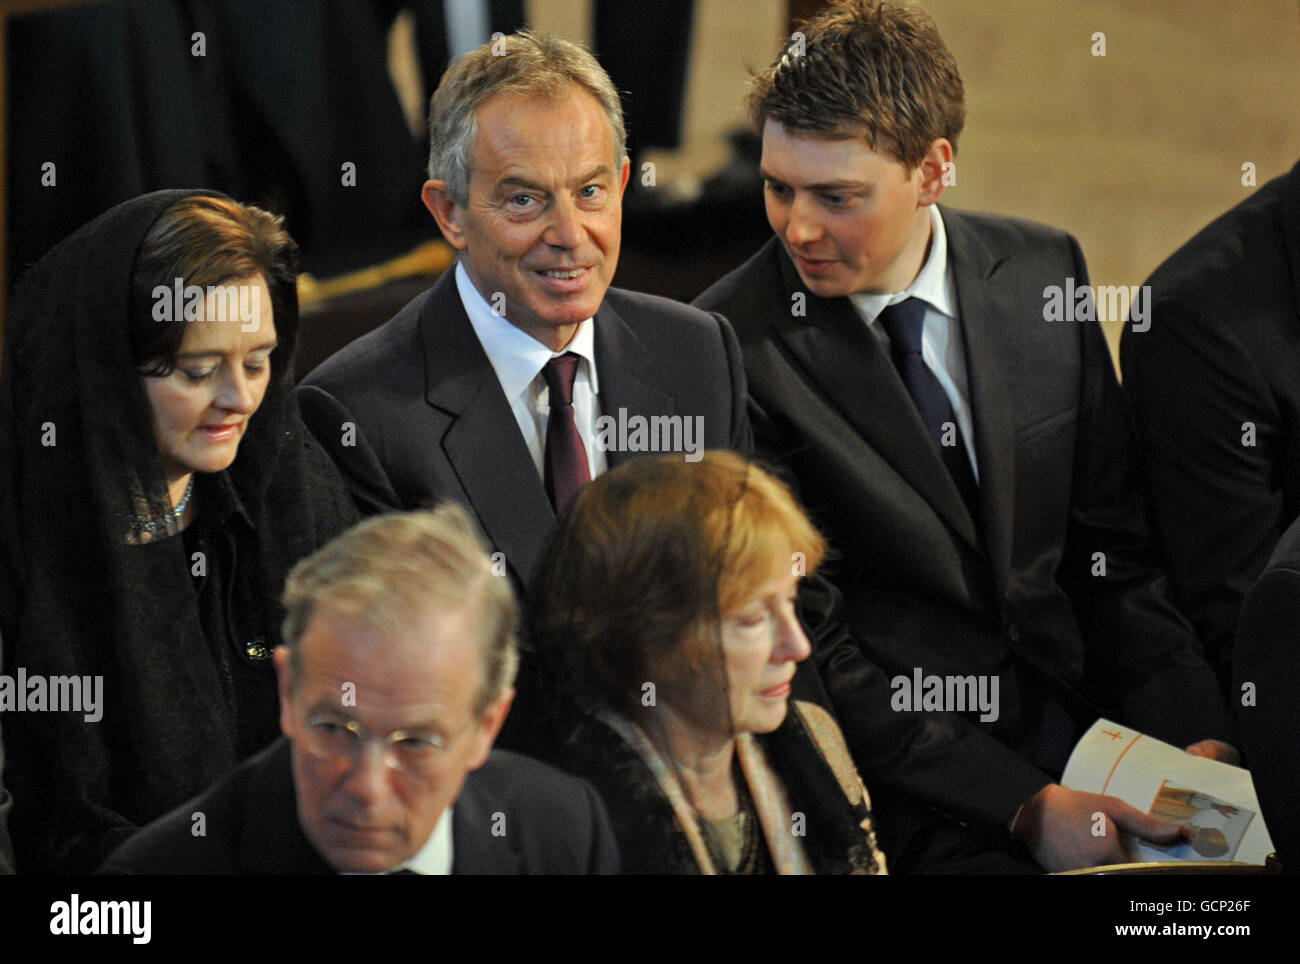 L'ancien Premier ministre britannique Tony Blair (au centre), l'épouse Cherie et son fils Euan, lors d'une messe présidée par le pape Benoît XVI à la cathédrale de Westminster, dans le centre de Londres. Banque D'Images